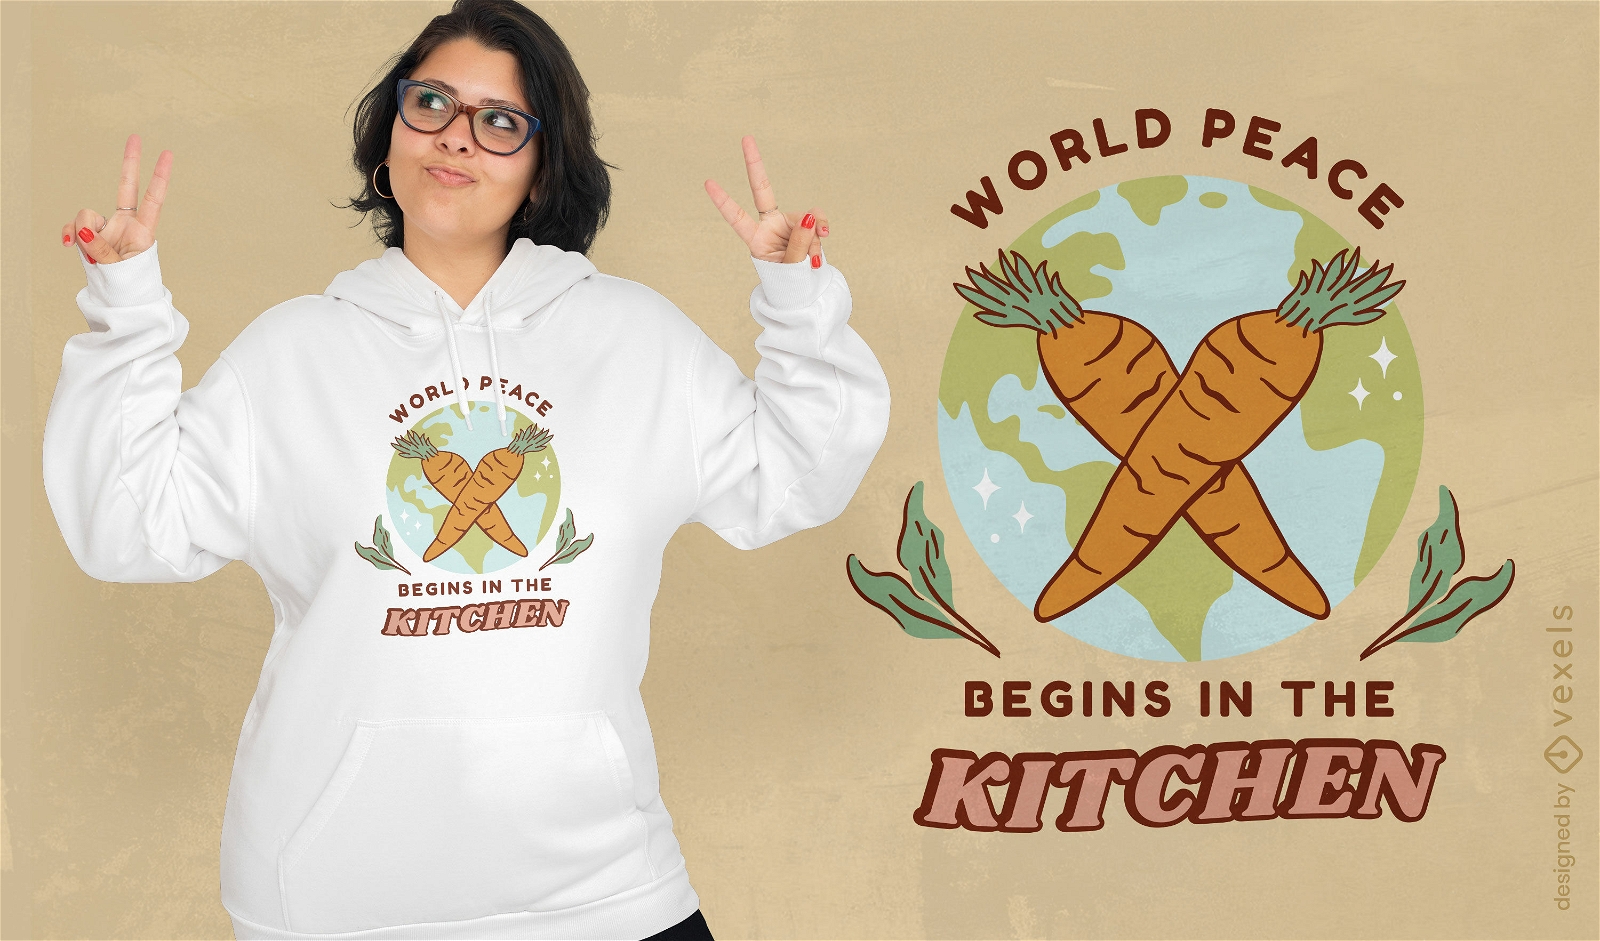 Dise?o de camiseta de comida vegana saludable de zanahorias.